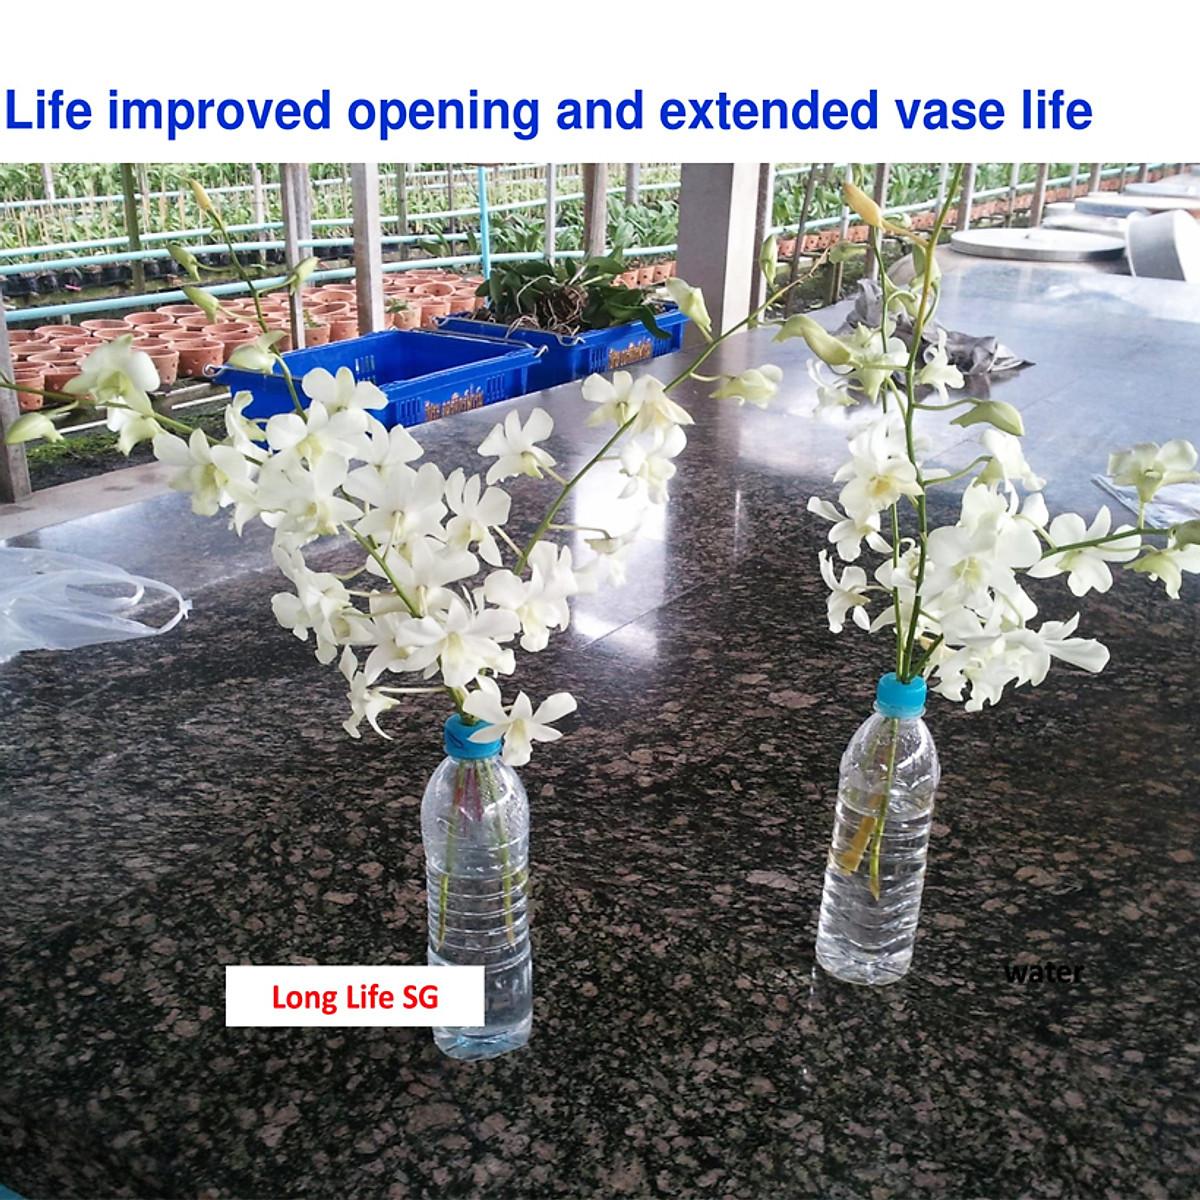 Nước cắm hoa lâu tàn (Set 100 gói) dạng bột nhập khẩu Israel mỗi gói tạo ra 0.5L dung dịch xử lý hoa cắm bình